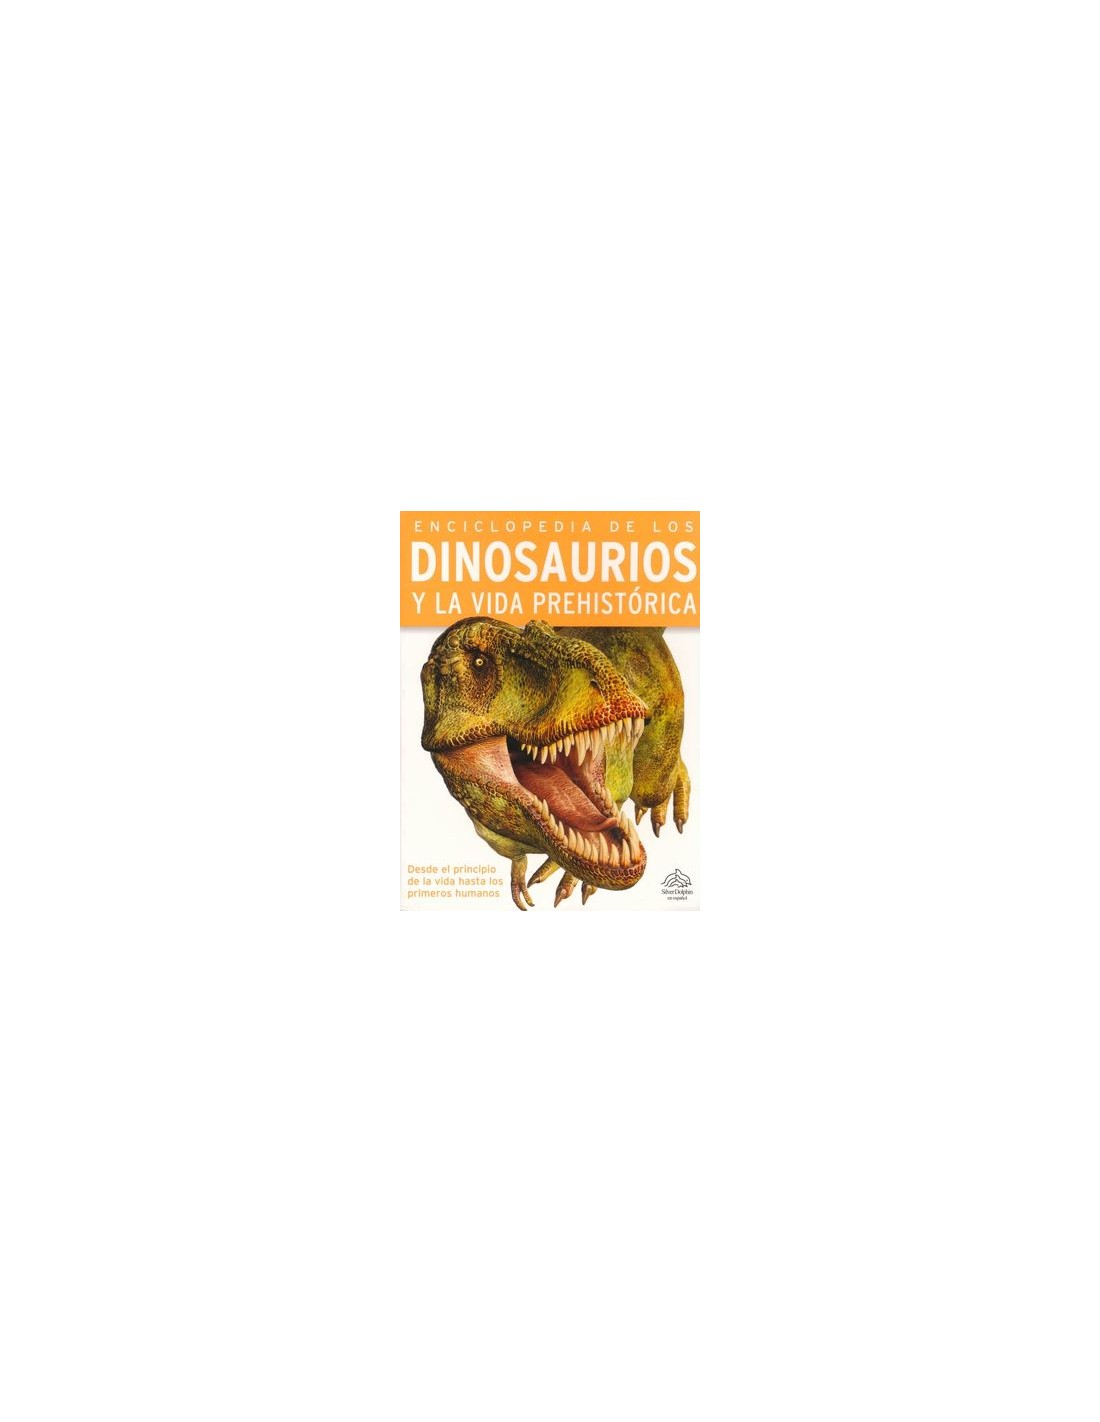 Enciclopedia de los Dinosaurios y la vida prehistórica